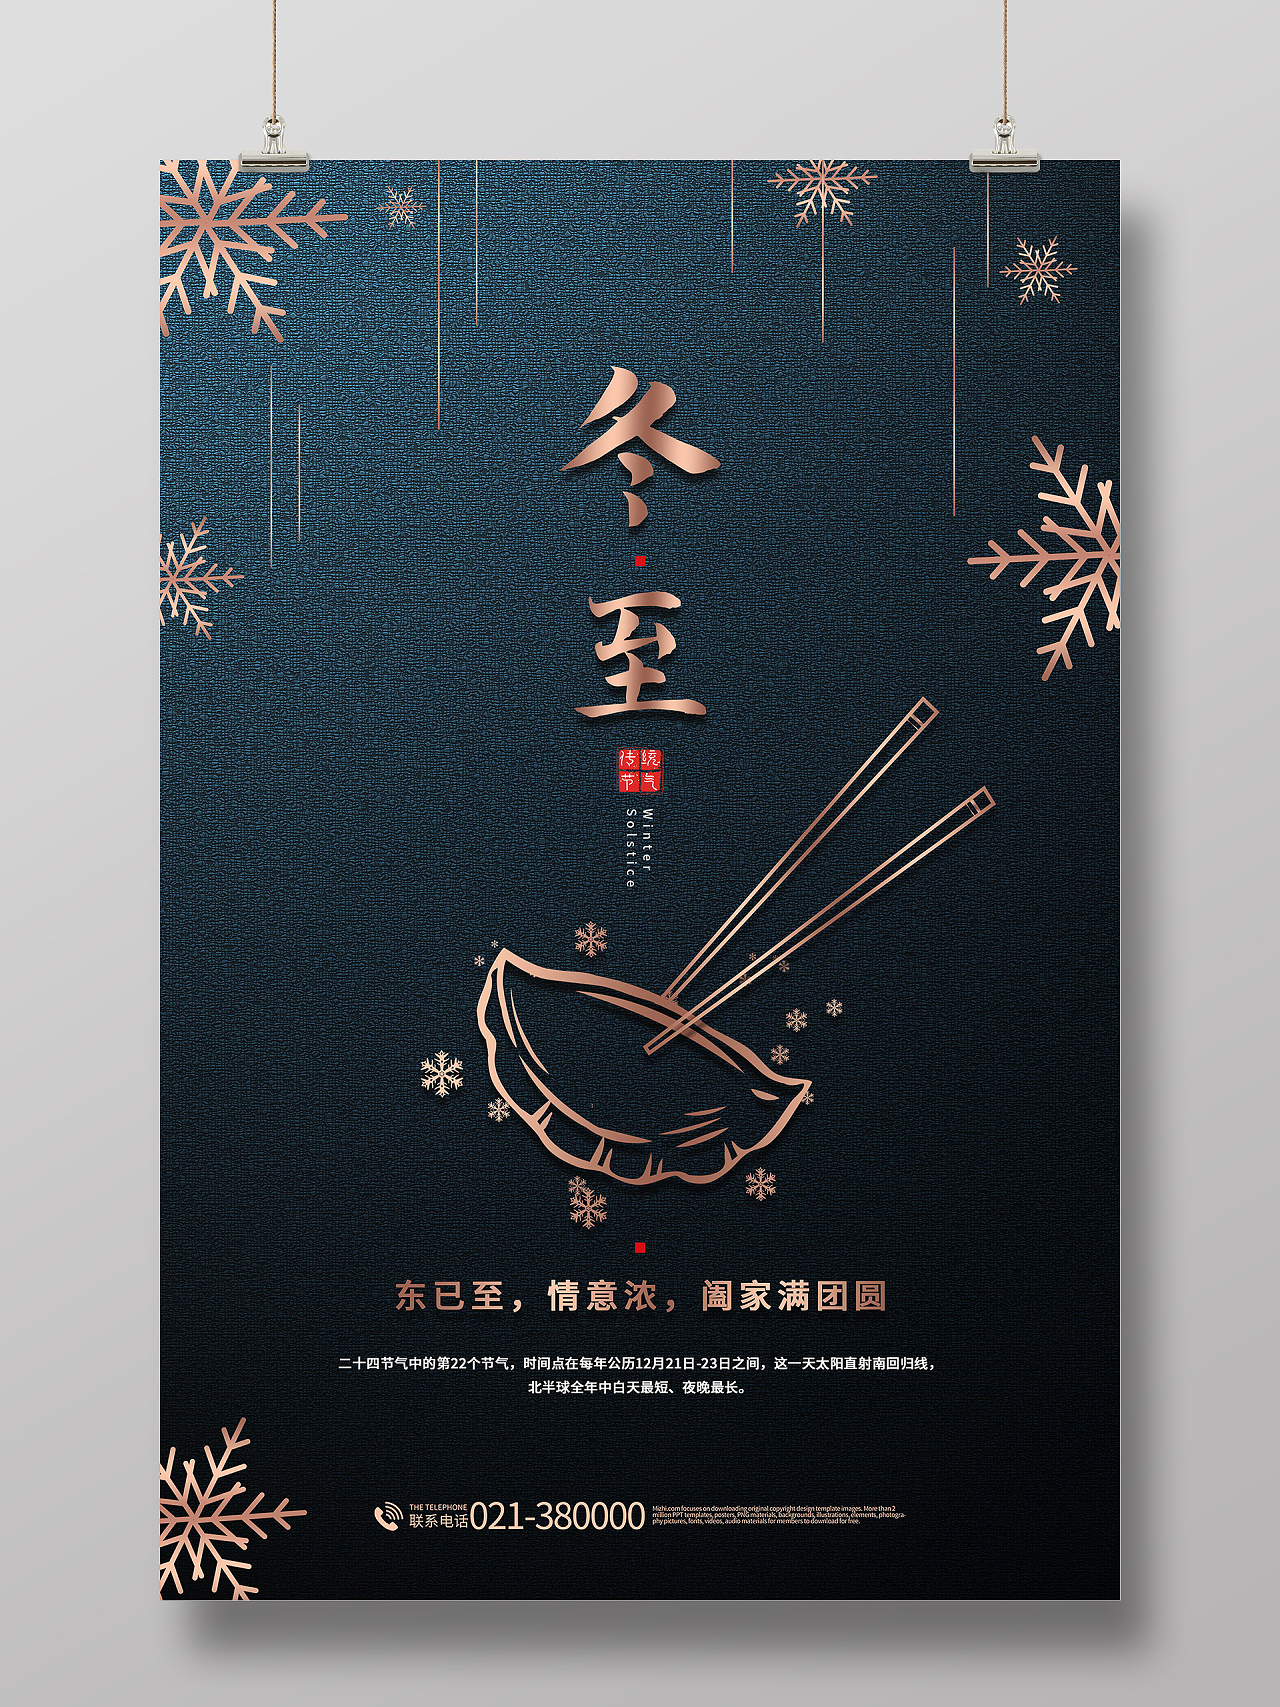 中国传统节日二十四节气冬至吃水饺海报设计冬至海报模板